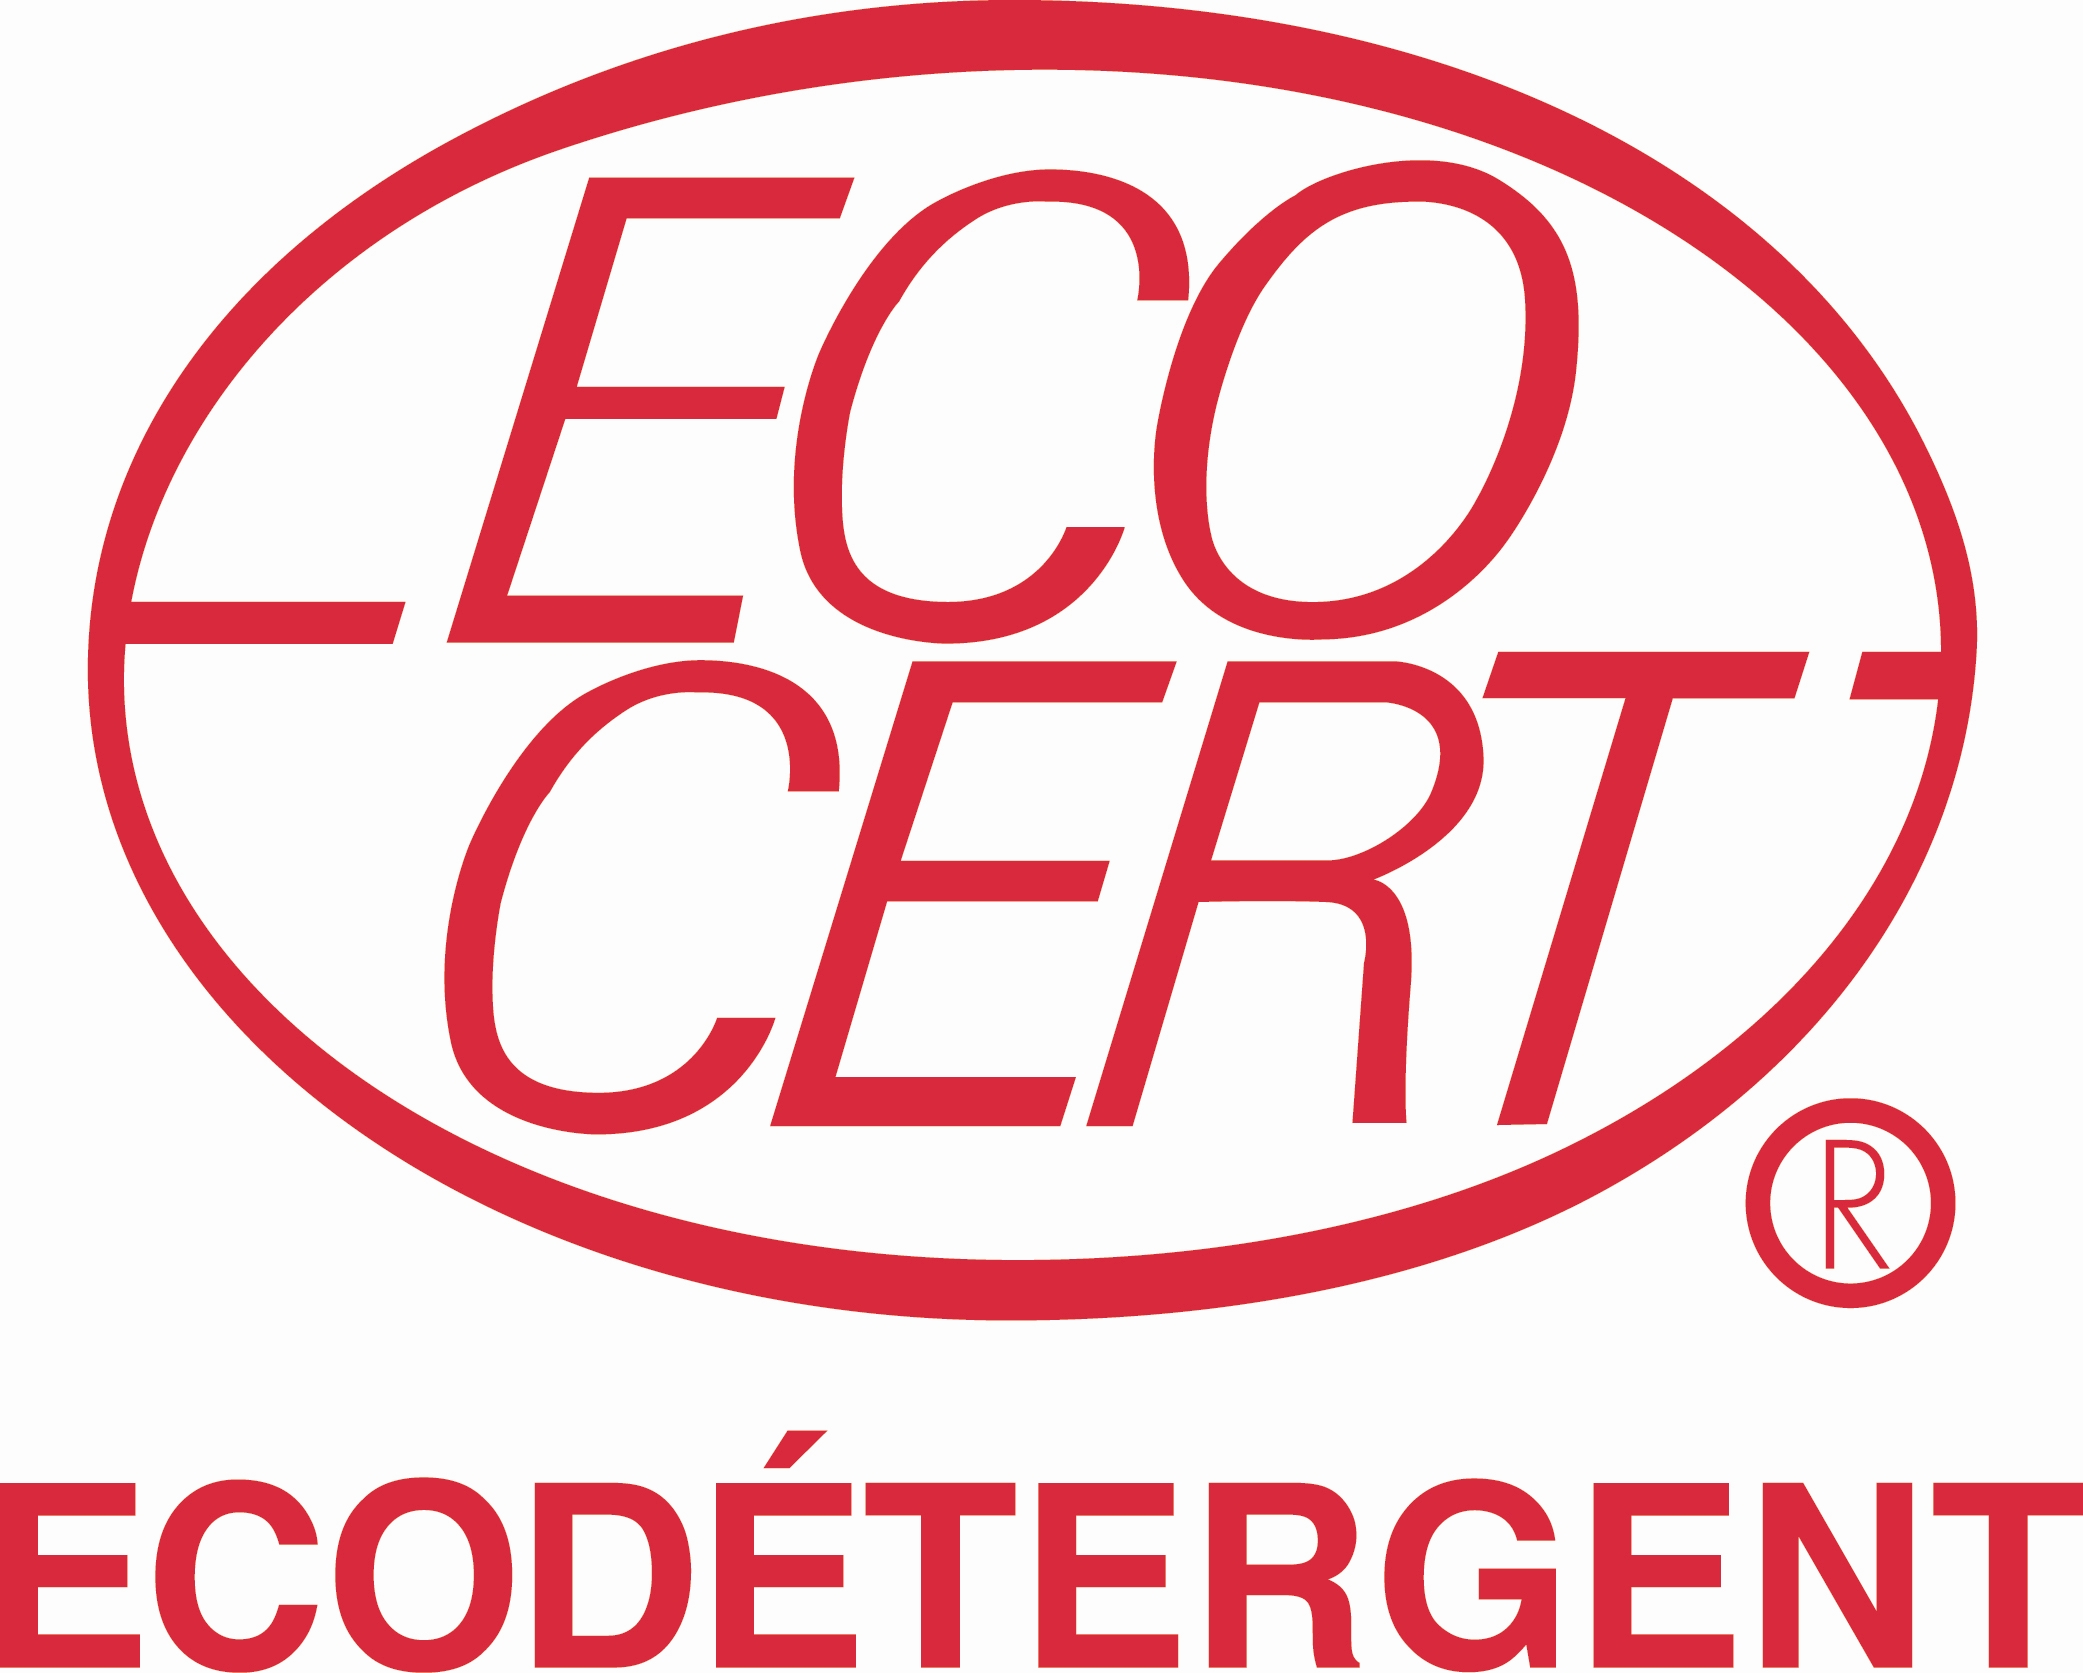 Ecodétergent